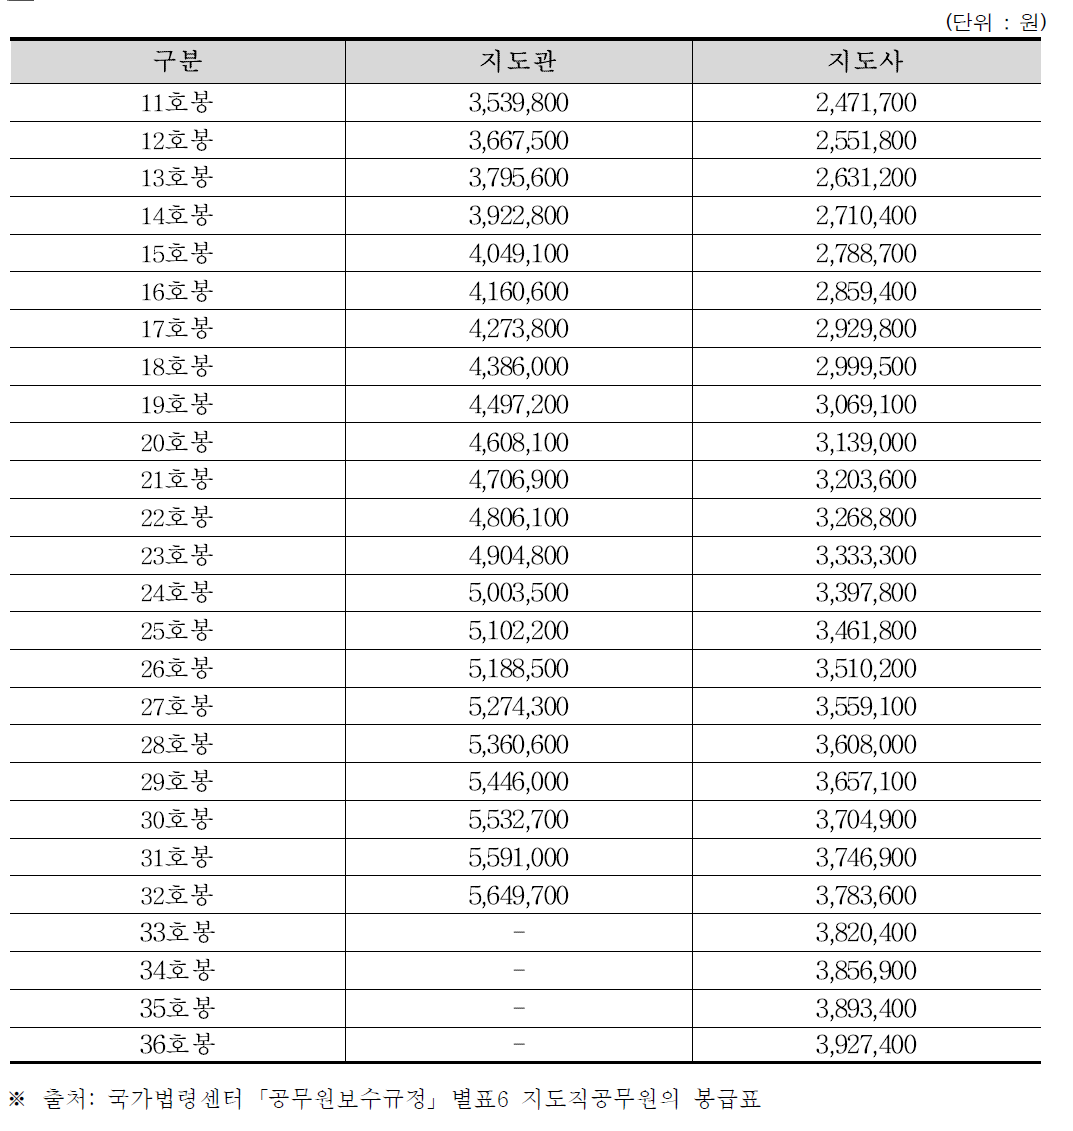 2016년도 농촌진흥공무원의 월급여 기준 (계속)